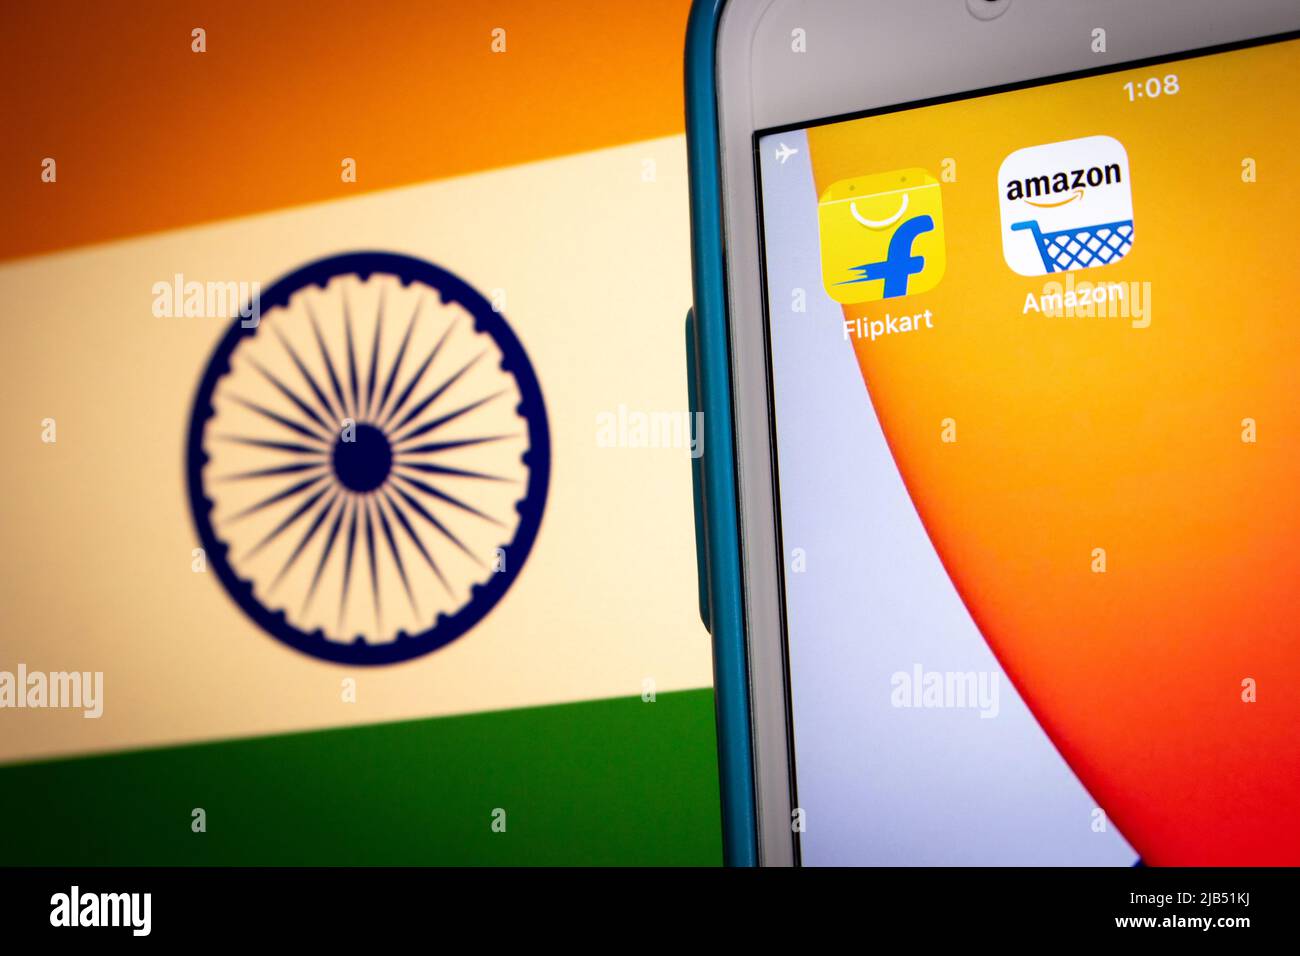 Flipkart, ein singapurisches Unternehmen mit Sitz in Karnataka, Indien, mit Amazon auf dem iPhone auf indischer Flagge. Flipkart & Amazon sind die 2 besten Online-Händler in Indien Stockfoto